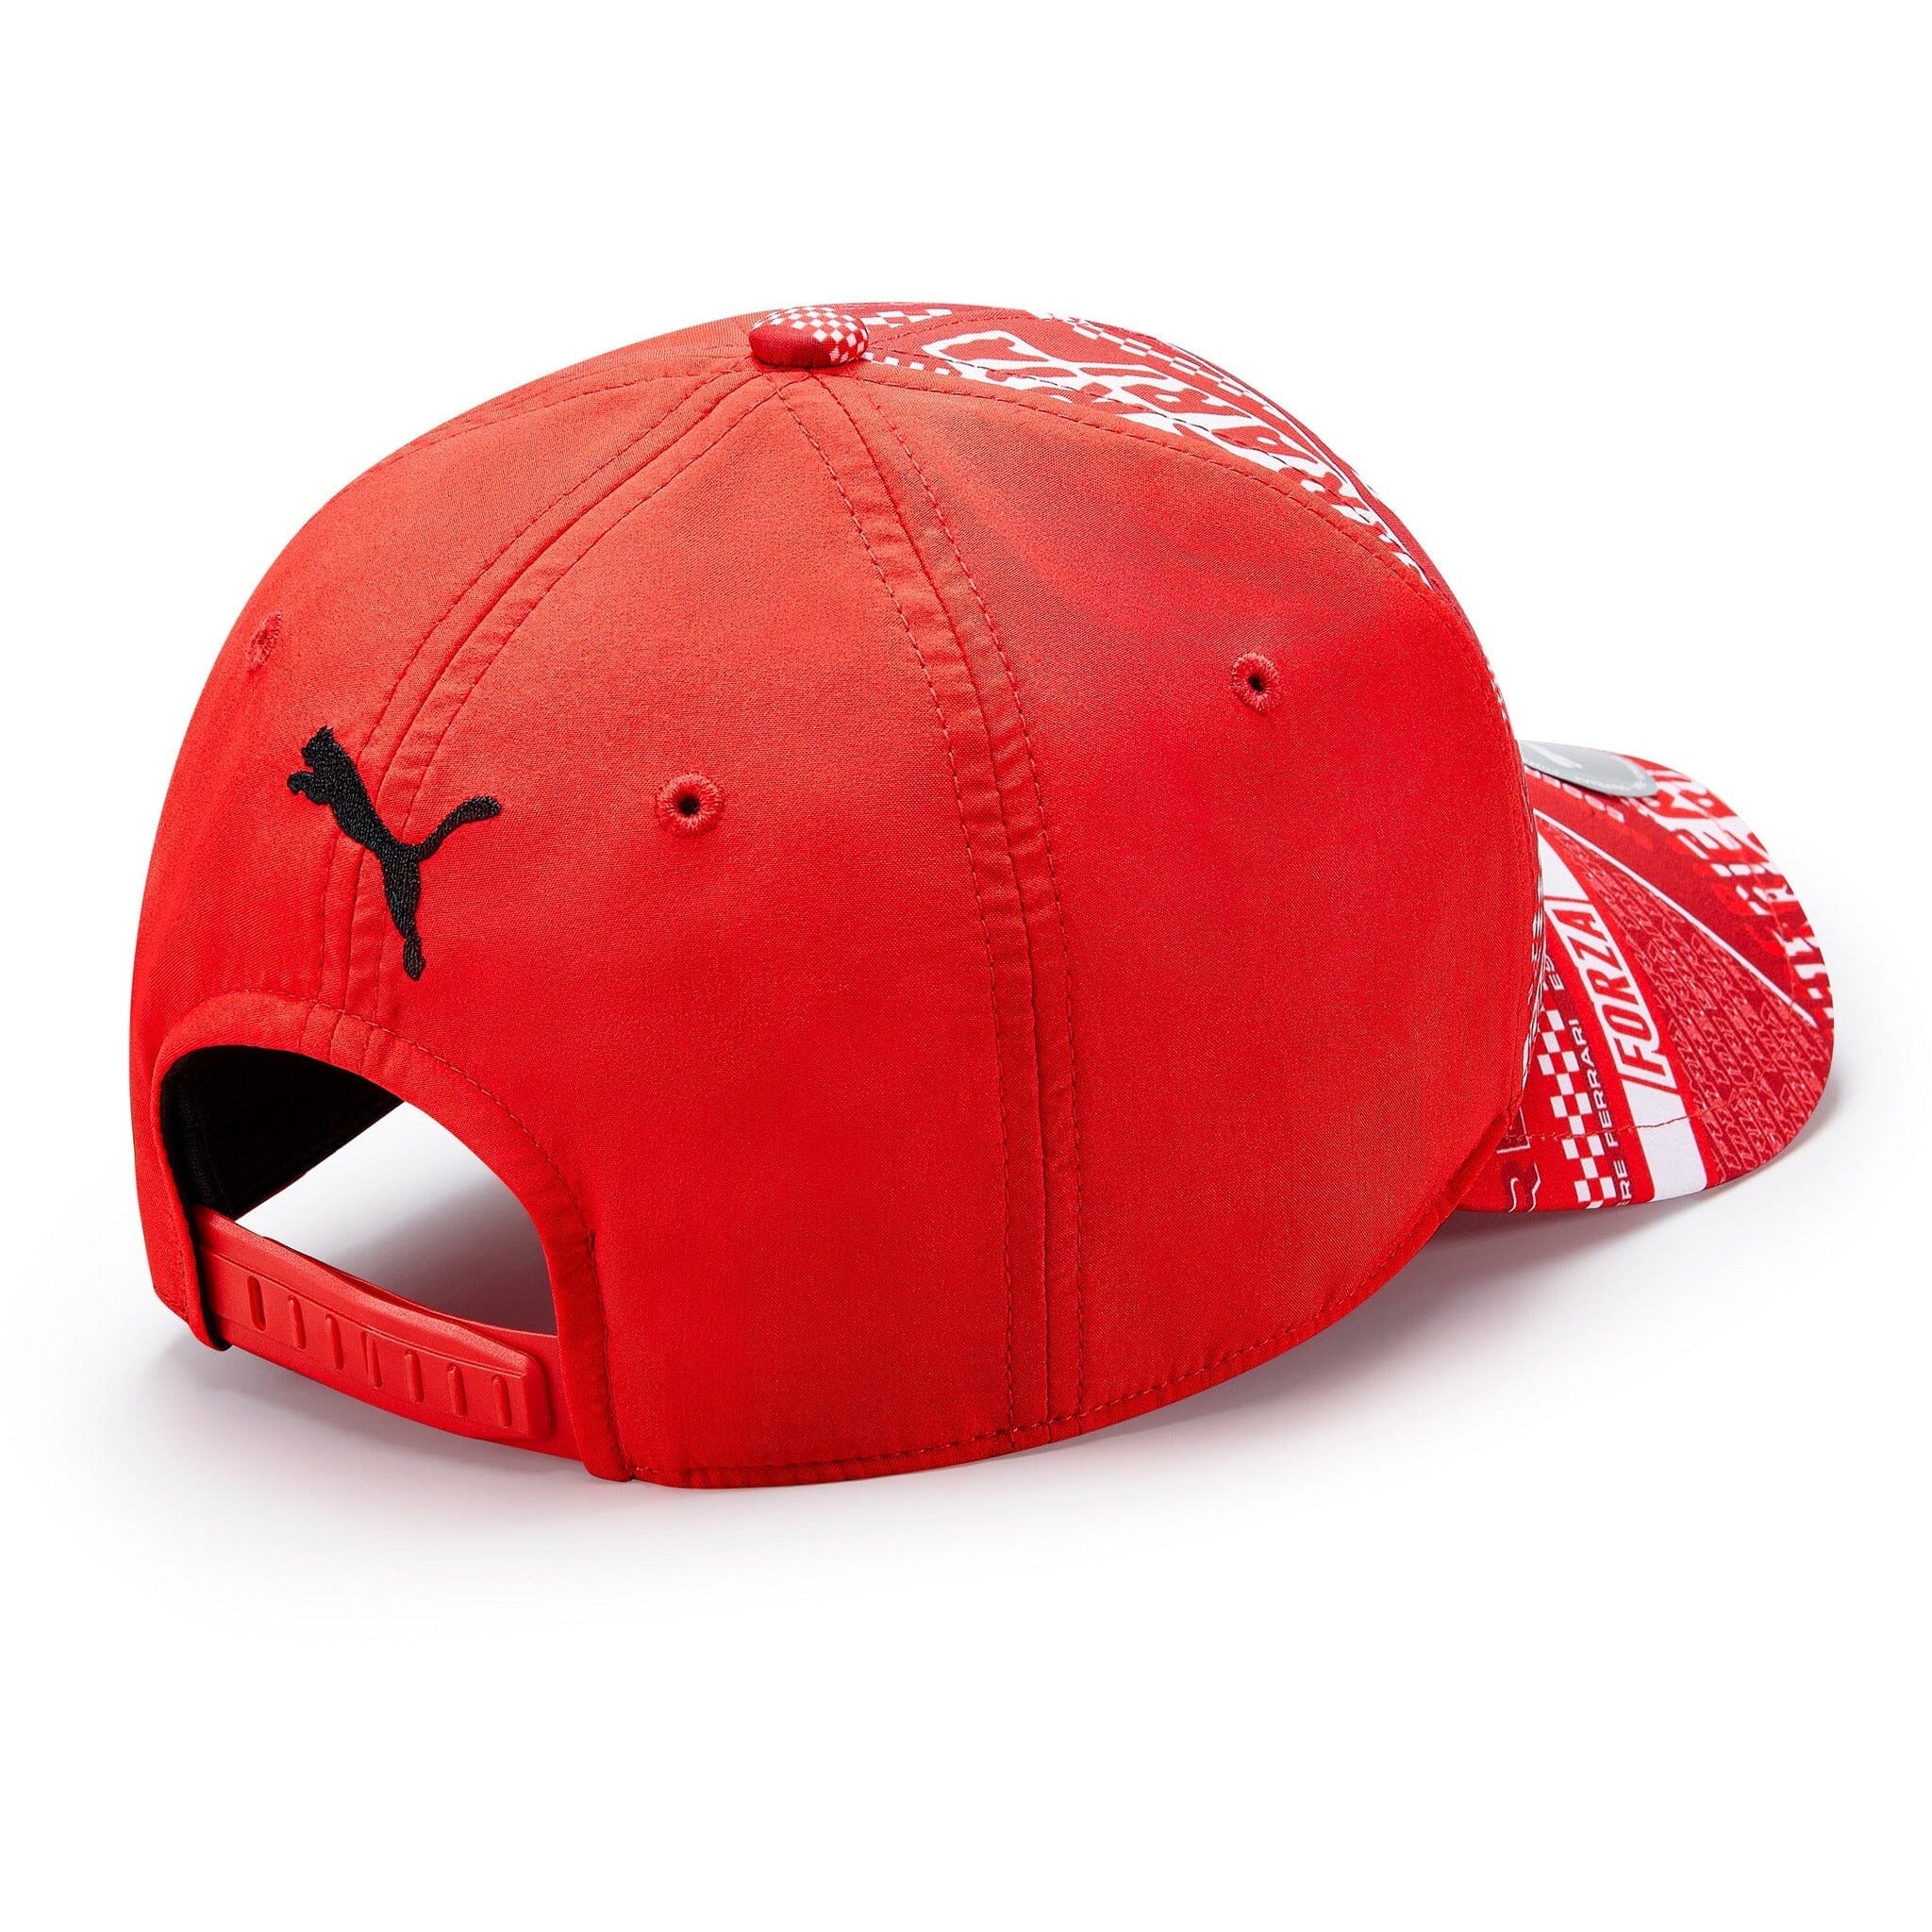 Scuderia Ferrari F1 Graphic Baseball Hat - Black/Red